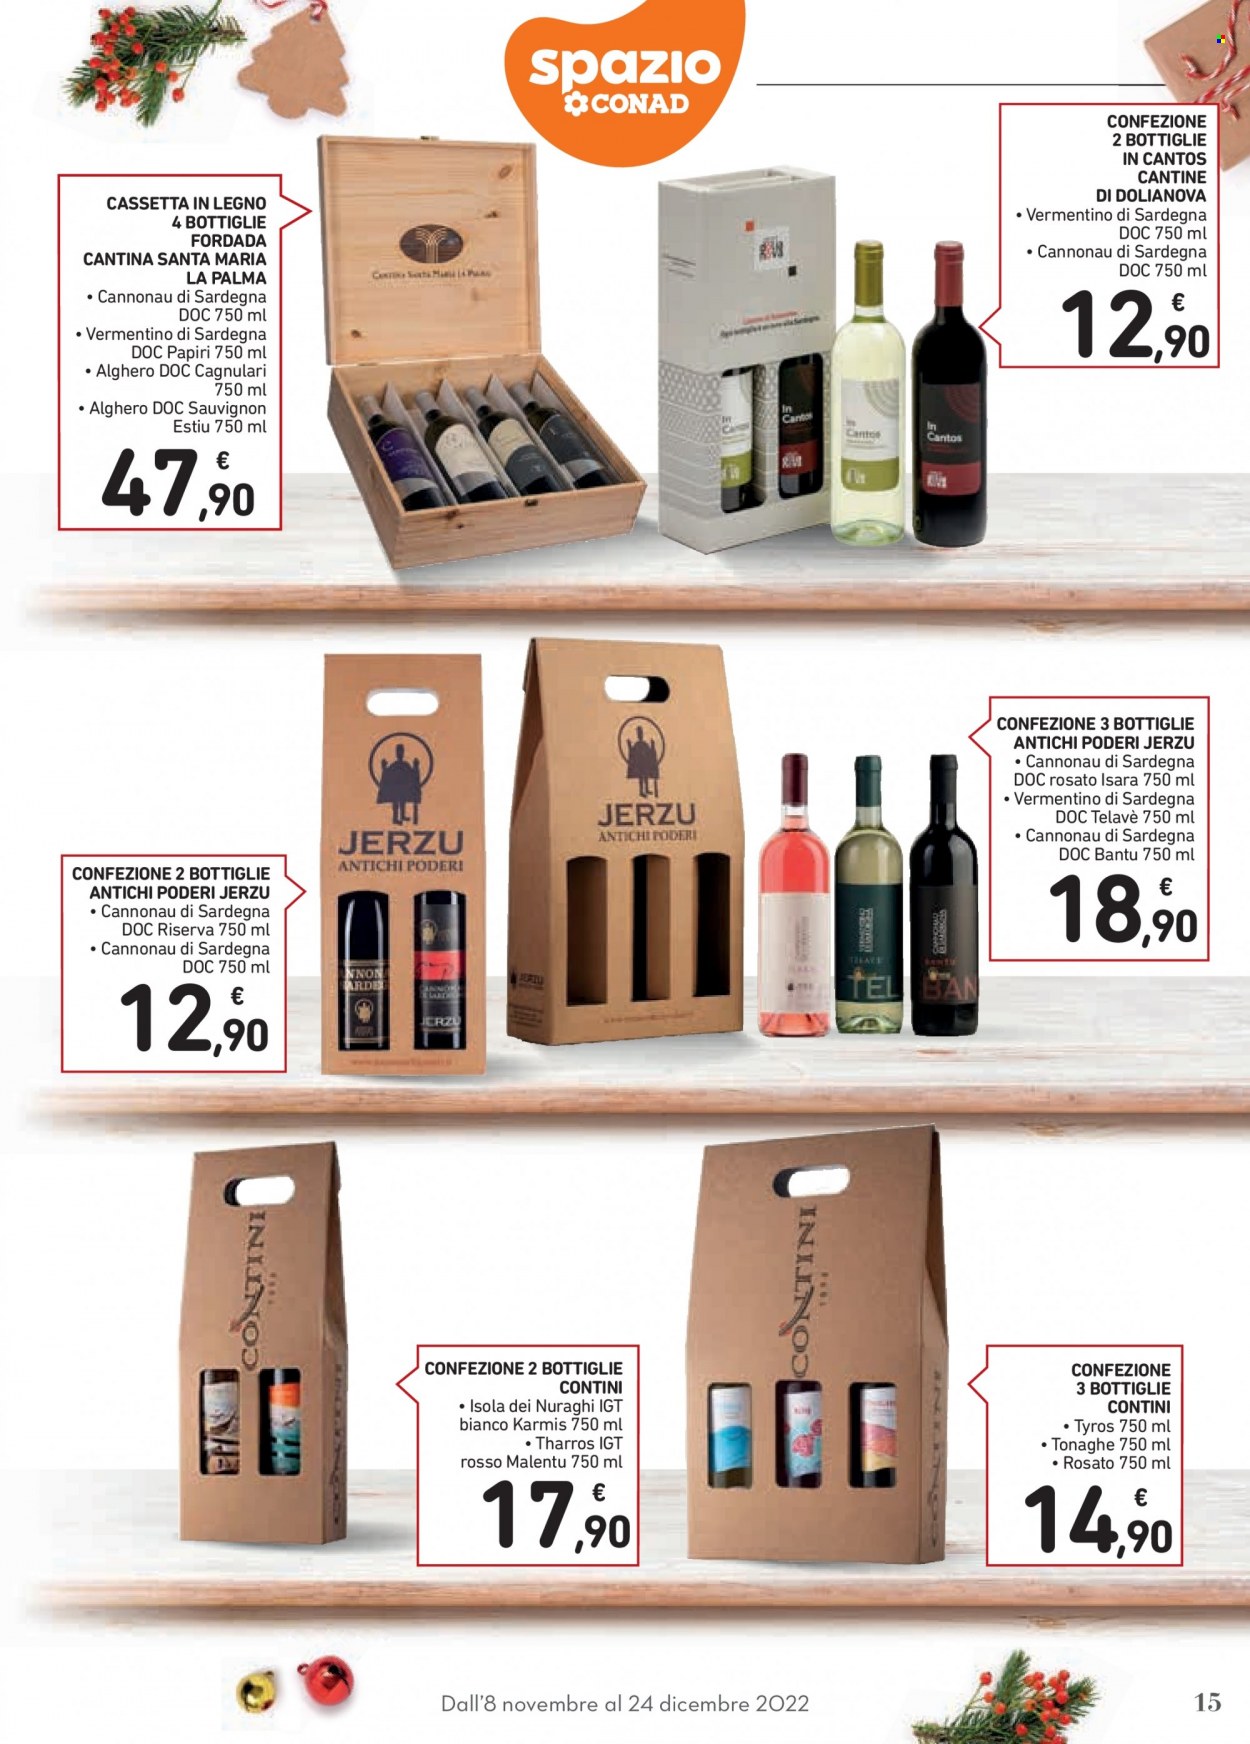 thumbnail - Volantino Conad - 8/11/2022 - 24/12/2022 - Prodotti in offerta - vino bianco, vino rosso, vino, Vermentino, Cannonau, Sauvignon. Pagina 15.